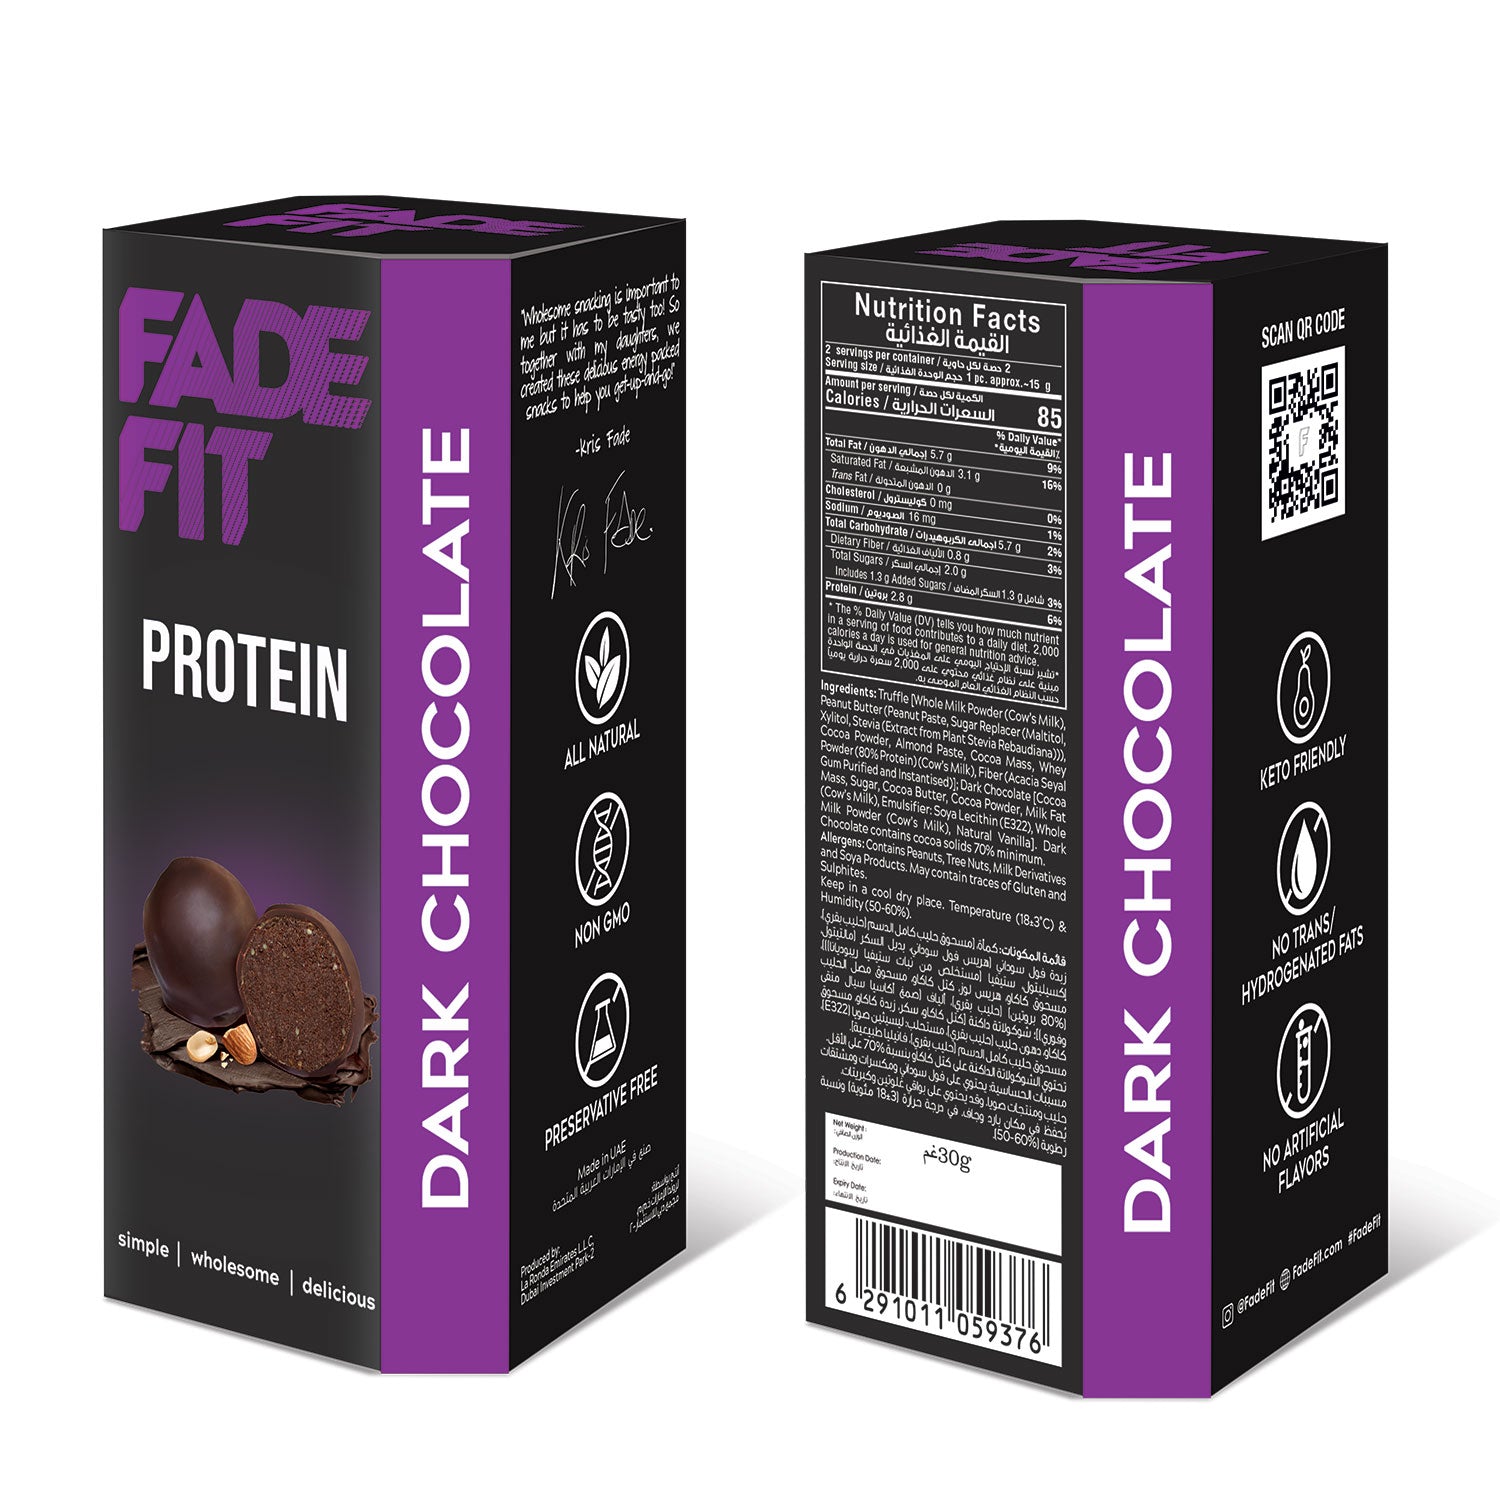 FADE FIT Dark Chocolate Protein, 30g - Keto Friendly, Non GMO, Natural